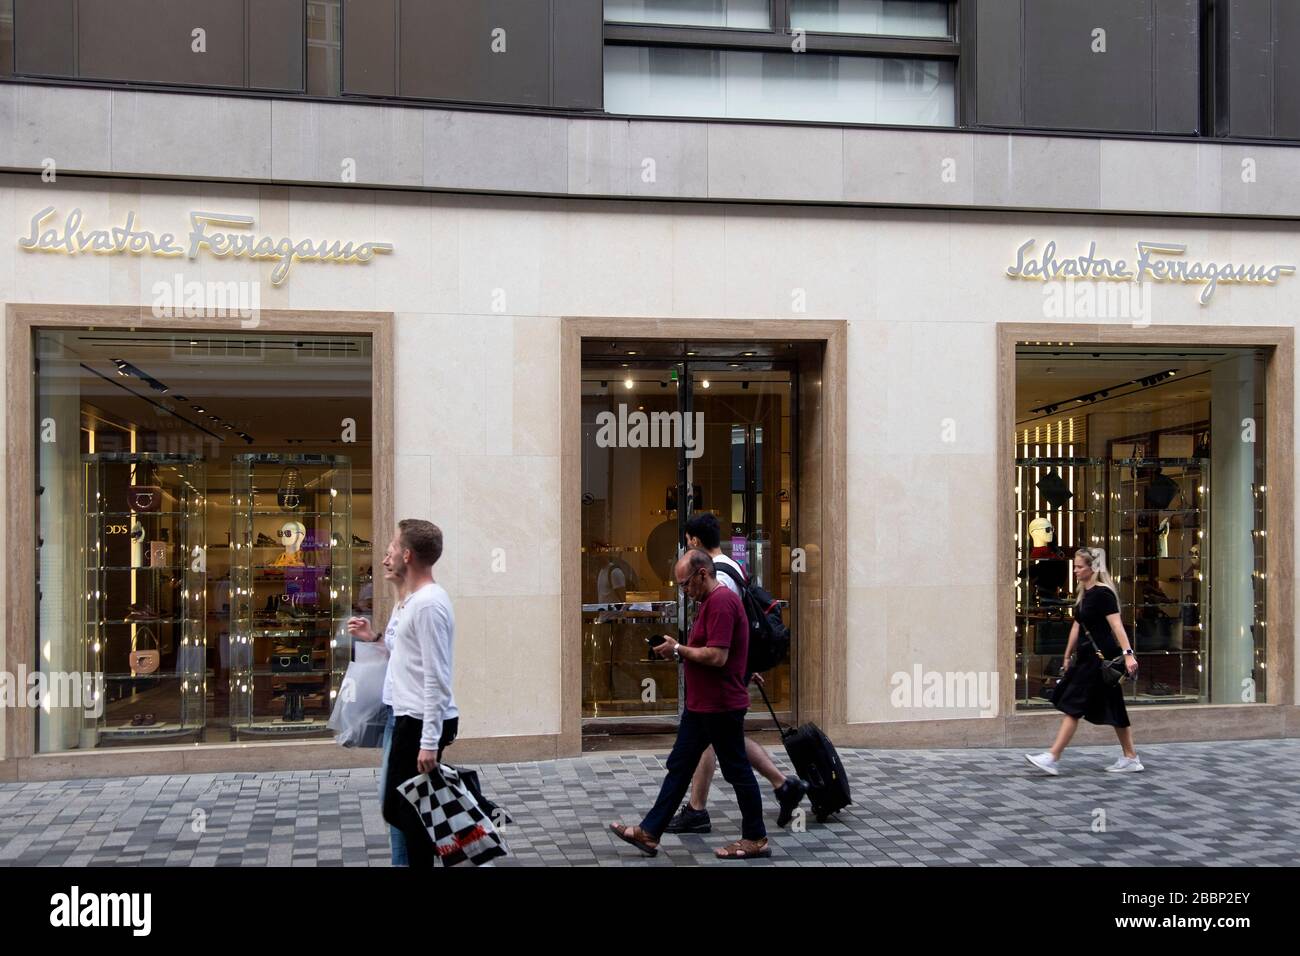 Salvatore Ferragamo store in Copenhagen, Denmark, Europe Stock Photo - Alamy